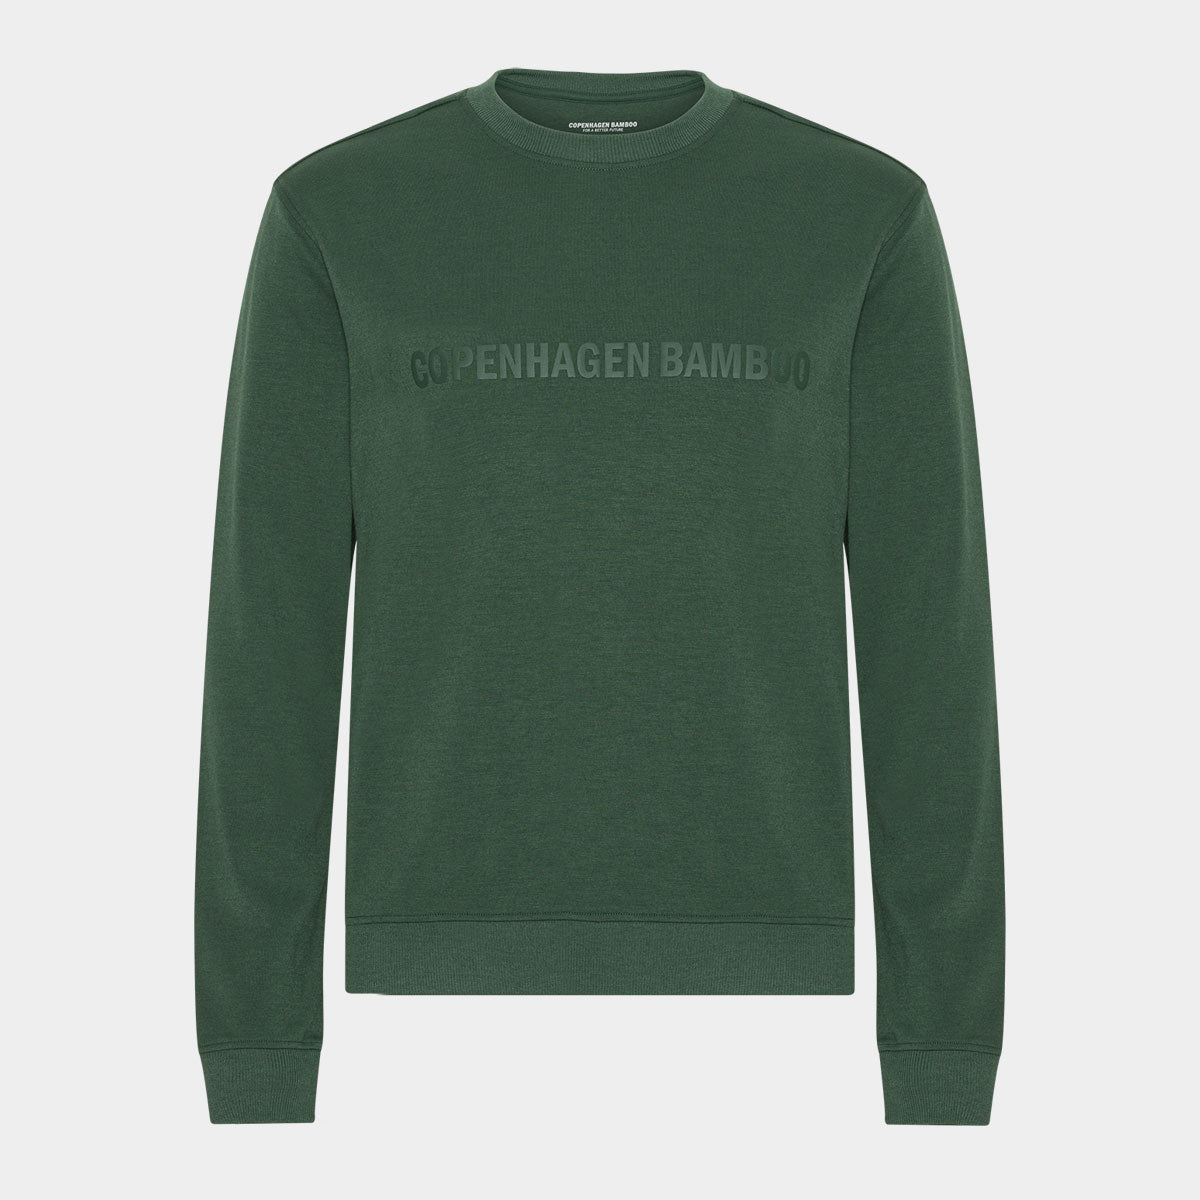 Billede af Grøn bambus sweatshirt med logo, M hos Bambustøj.dk